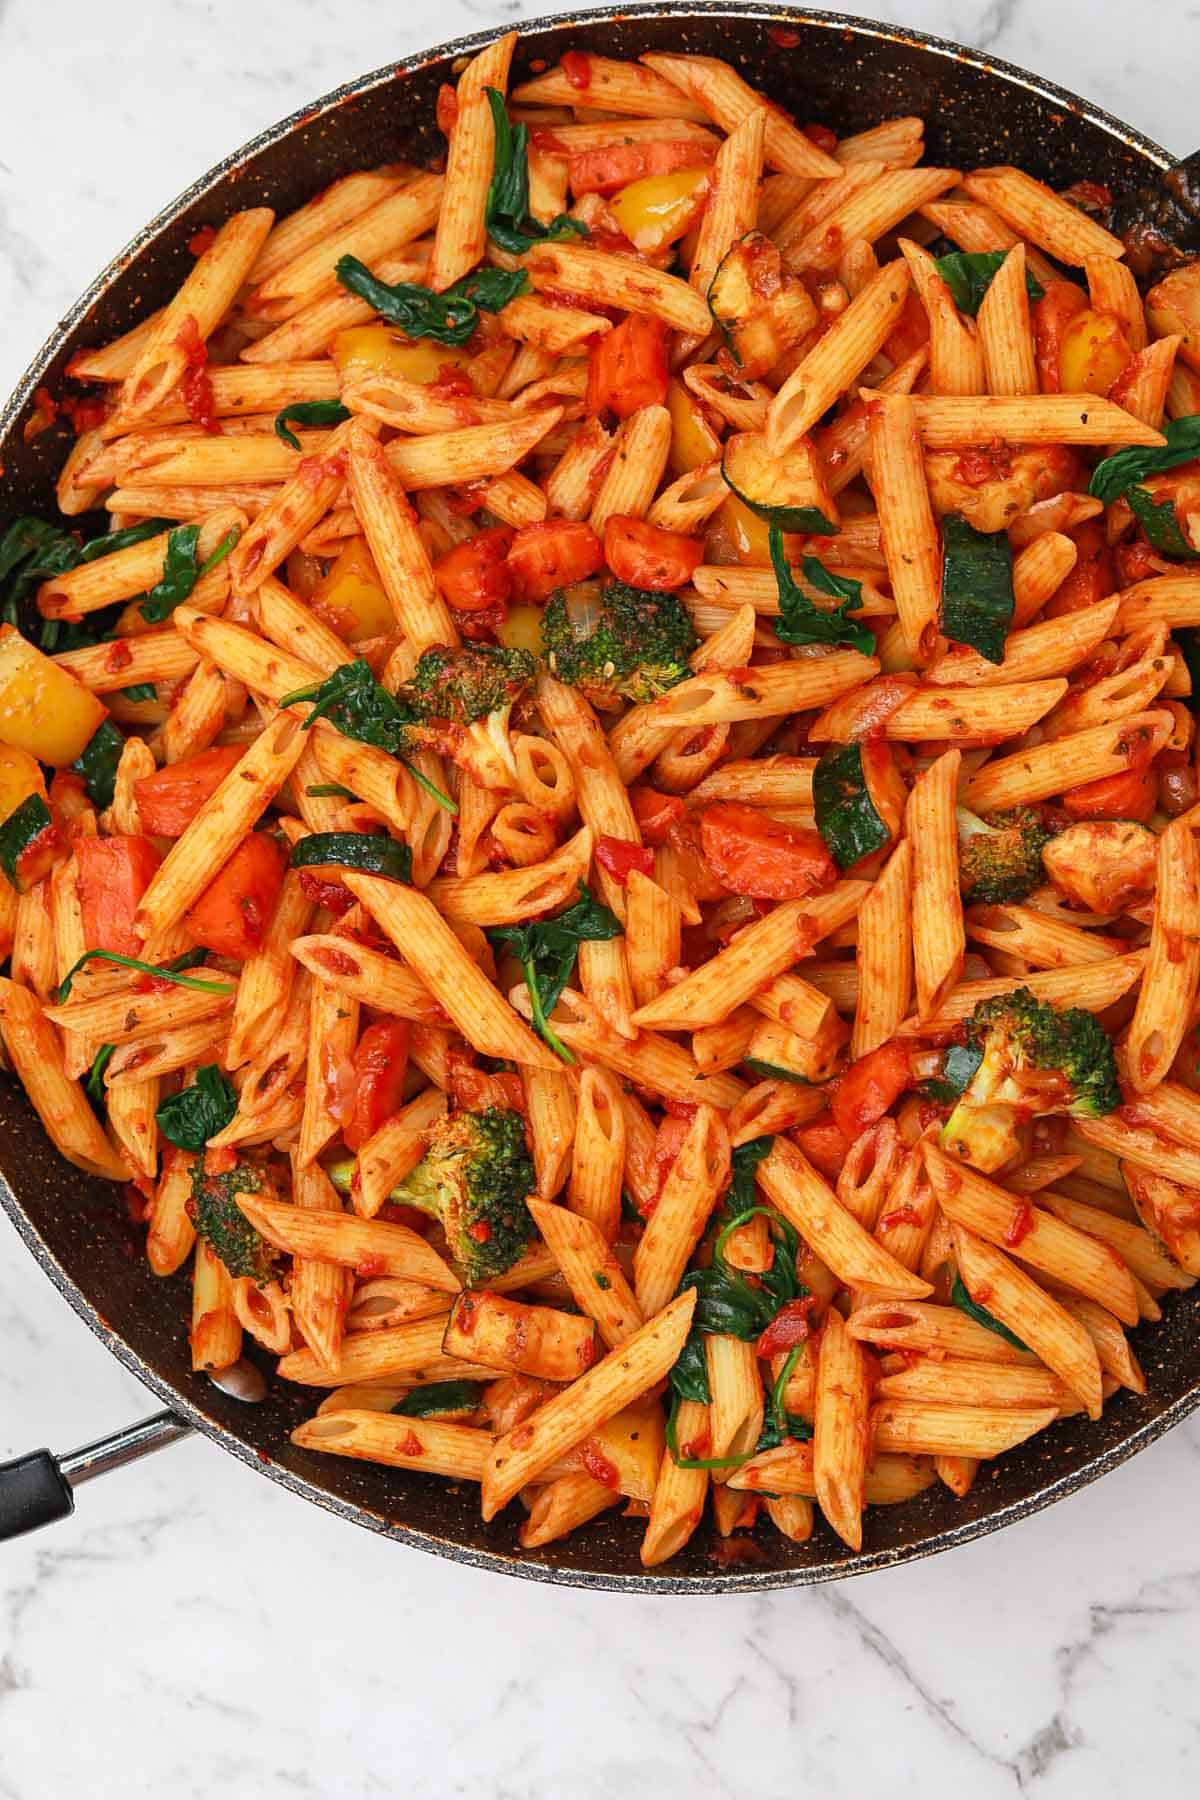 veggie pasta in a skillet.